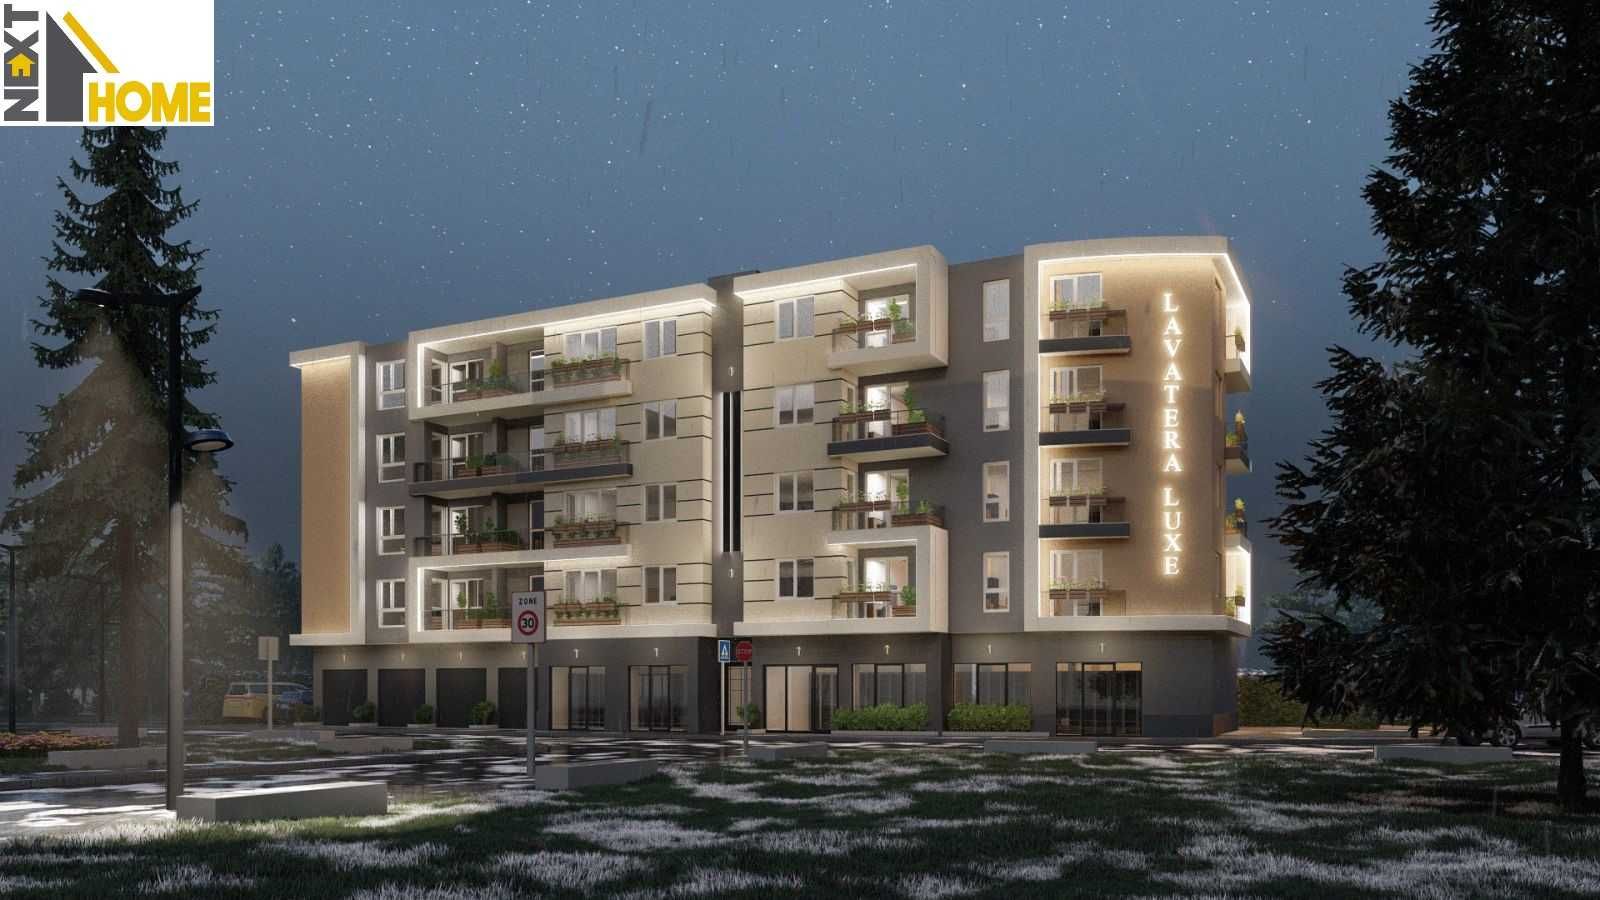 Компактен двустаен апартамент в новоизграждаща се жилищна сграда